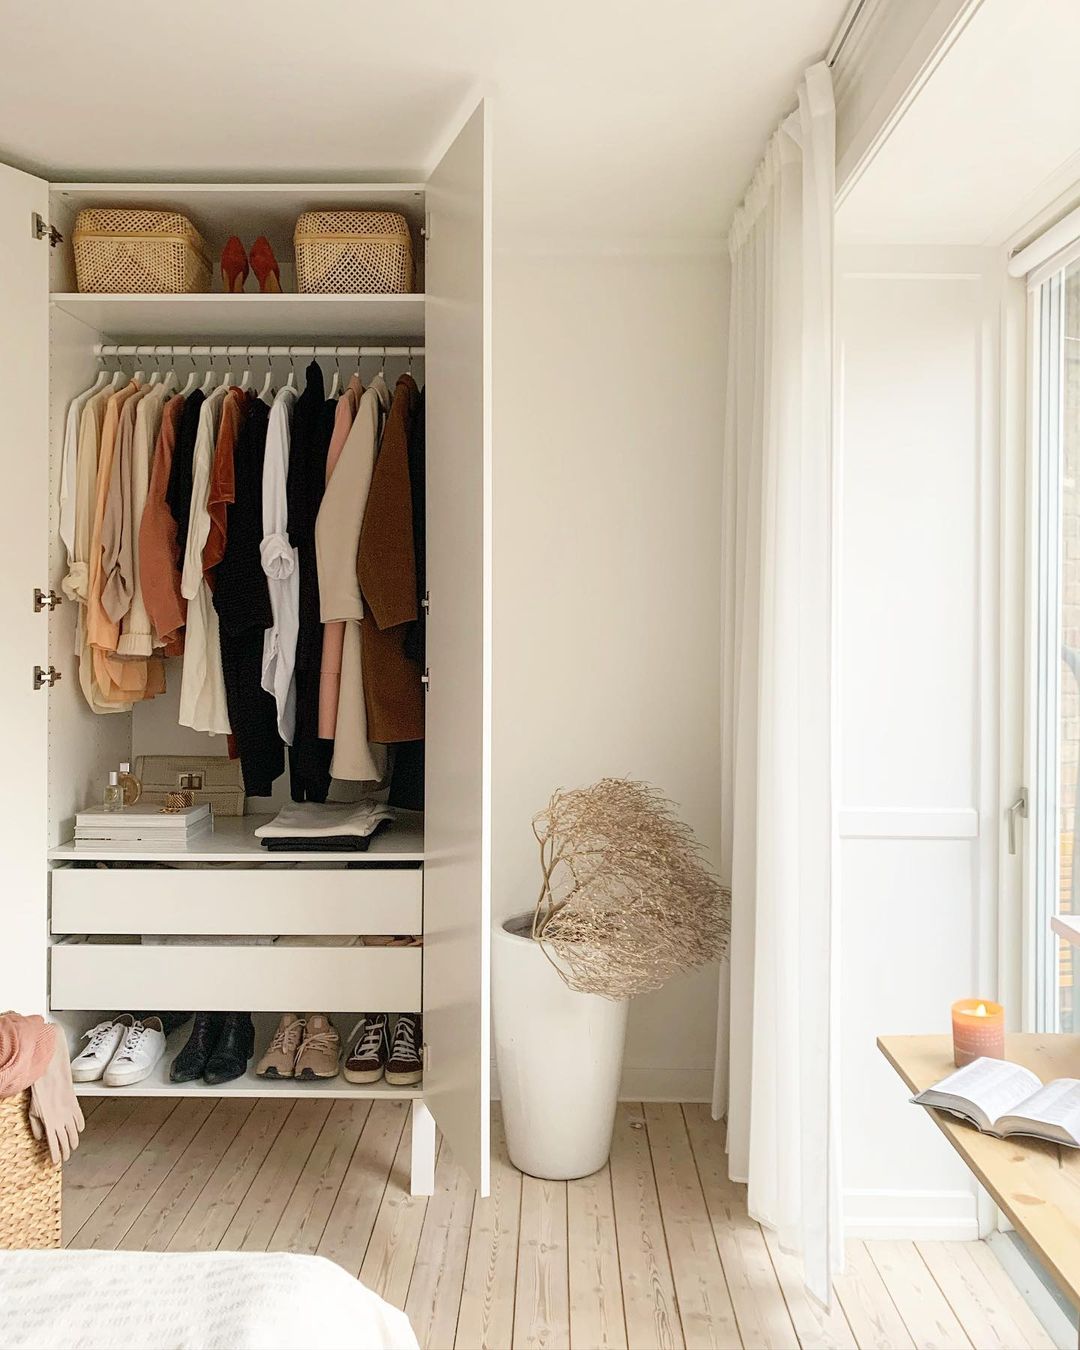 Clean Closet in a Bedroom. Photo by Instagram user @scandinavianstylist